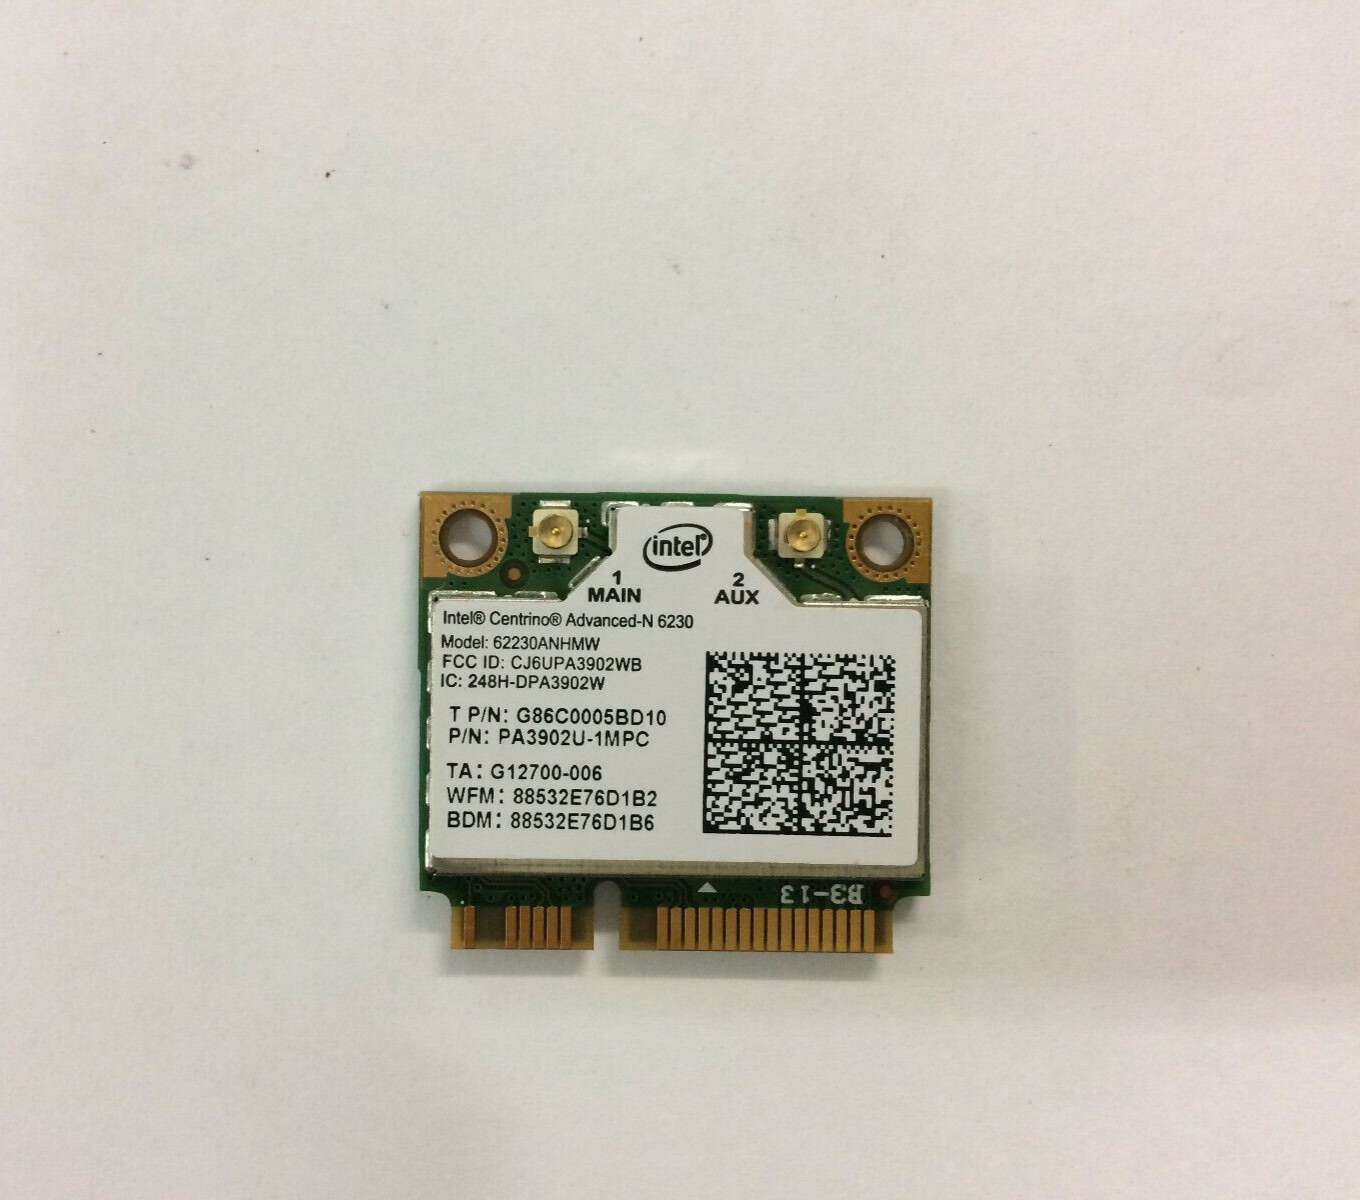 Intel Centrino Advanced-N 6230 Dual Band 802.11a/g/n PCIe WiFi Card 62230ANHMW